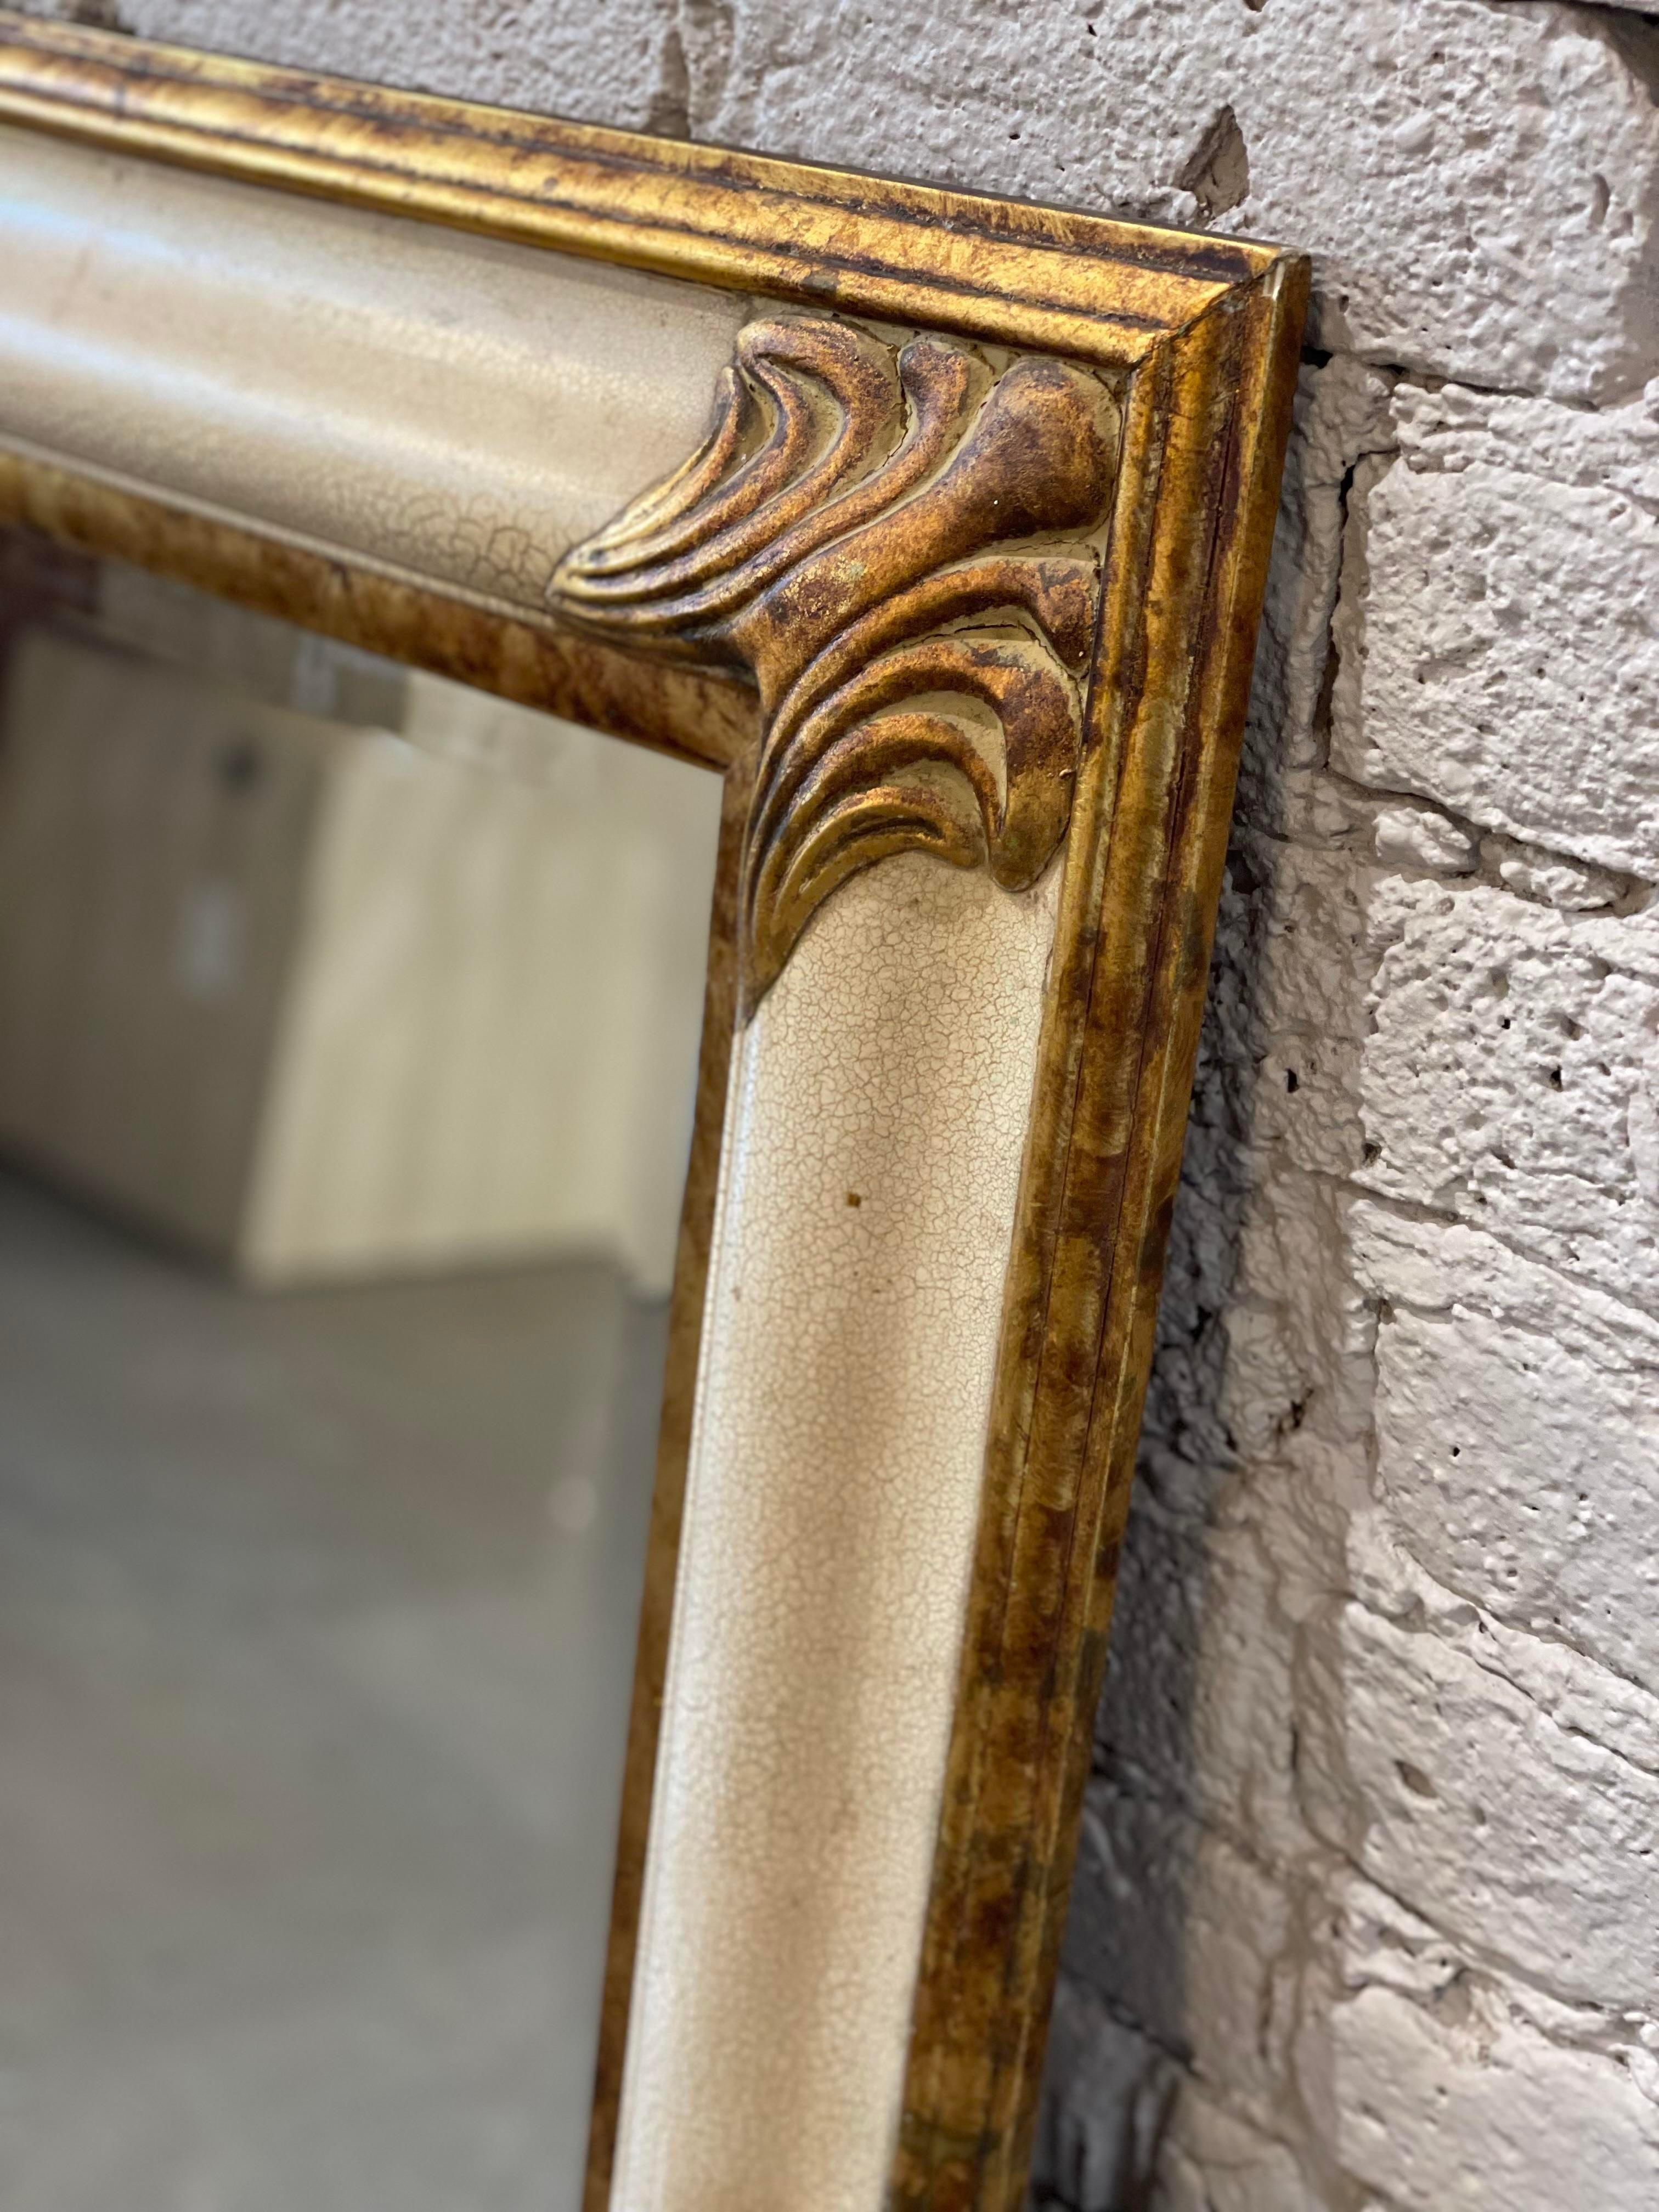 Schöner Vintage-Spiegel mit goldenen Details und cremefarbener Craquelé-Lackierung. Can vertikal oder horizontal ausgerichtet werden.
